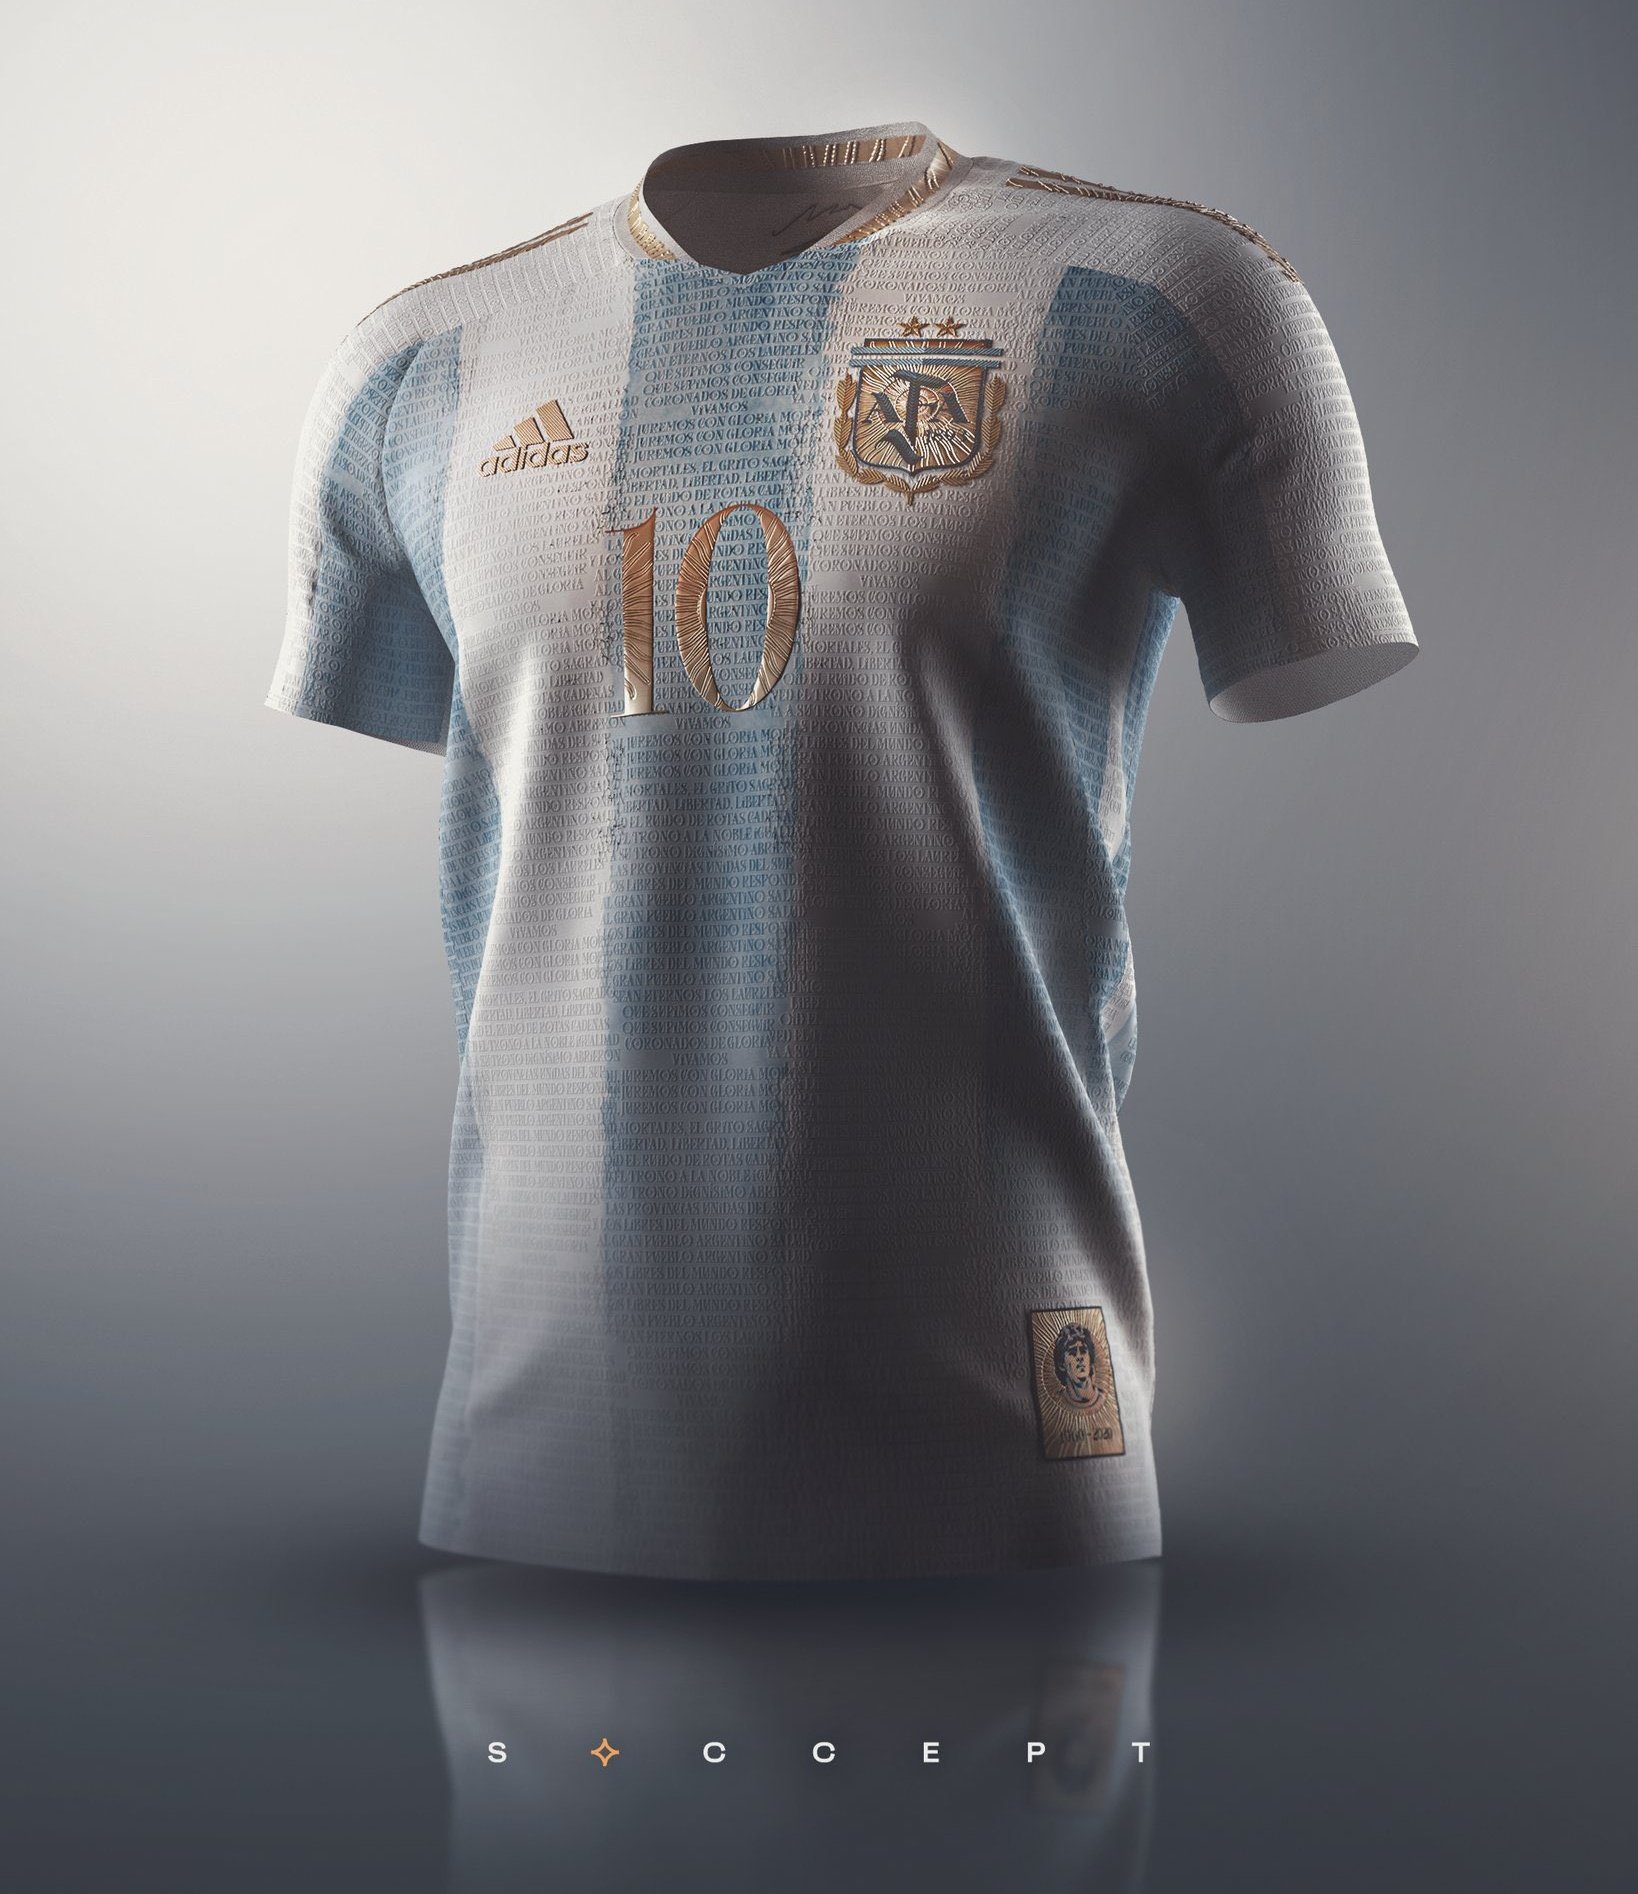 Por qué es tendencia? on Twitter: ""Adidas": Por comparación entre su nueva camiseta para la Selección Argentina y diseñada por @soccept https://t.co/A7MbqyhLX7" / Twitter